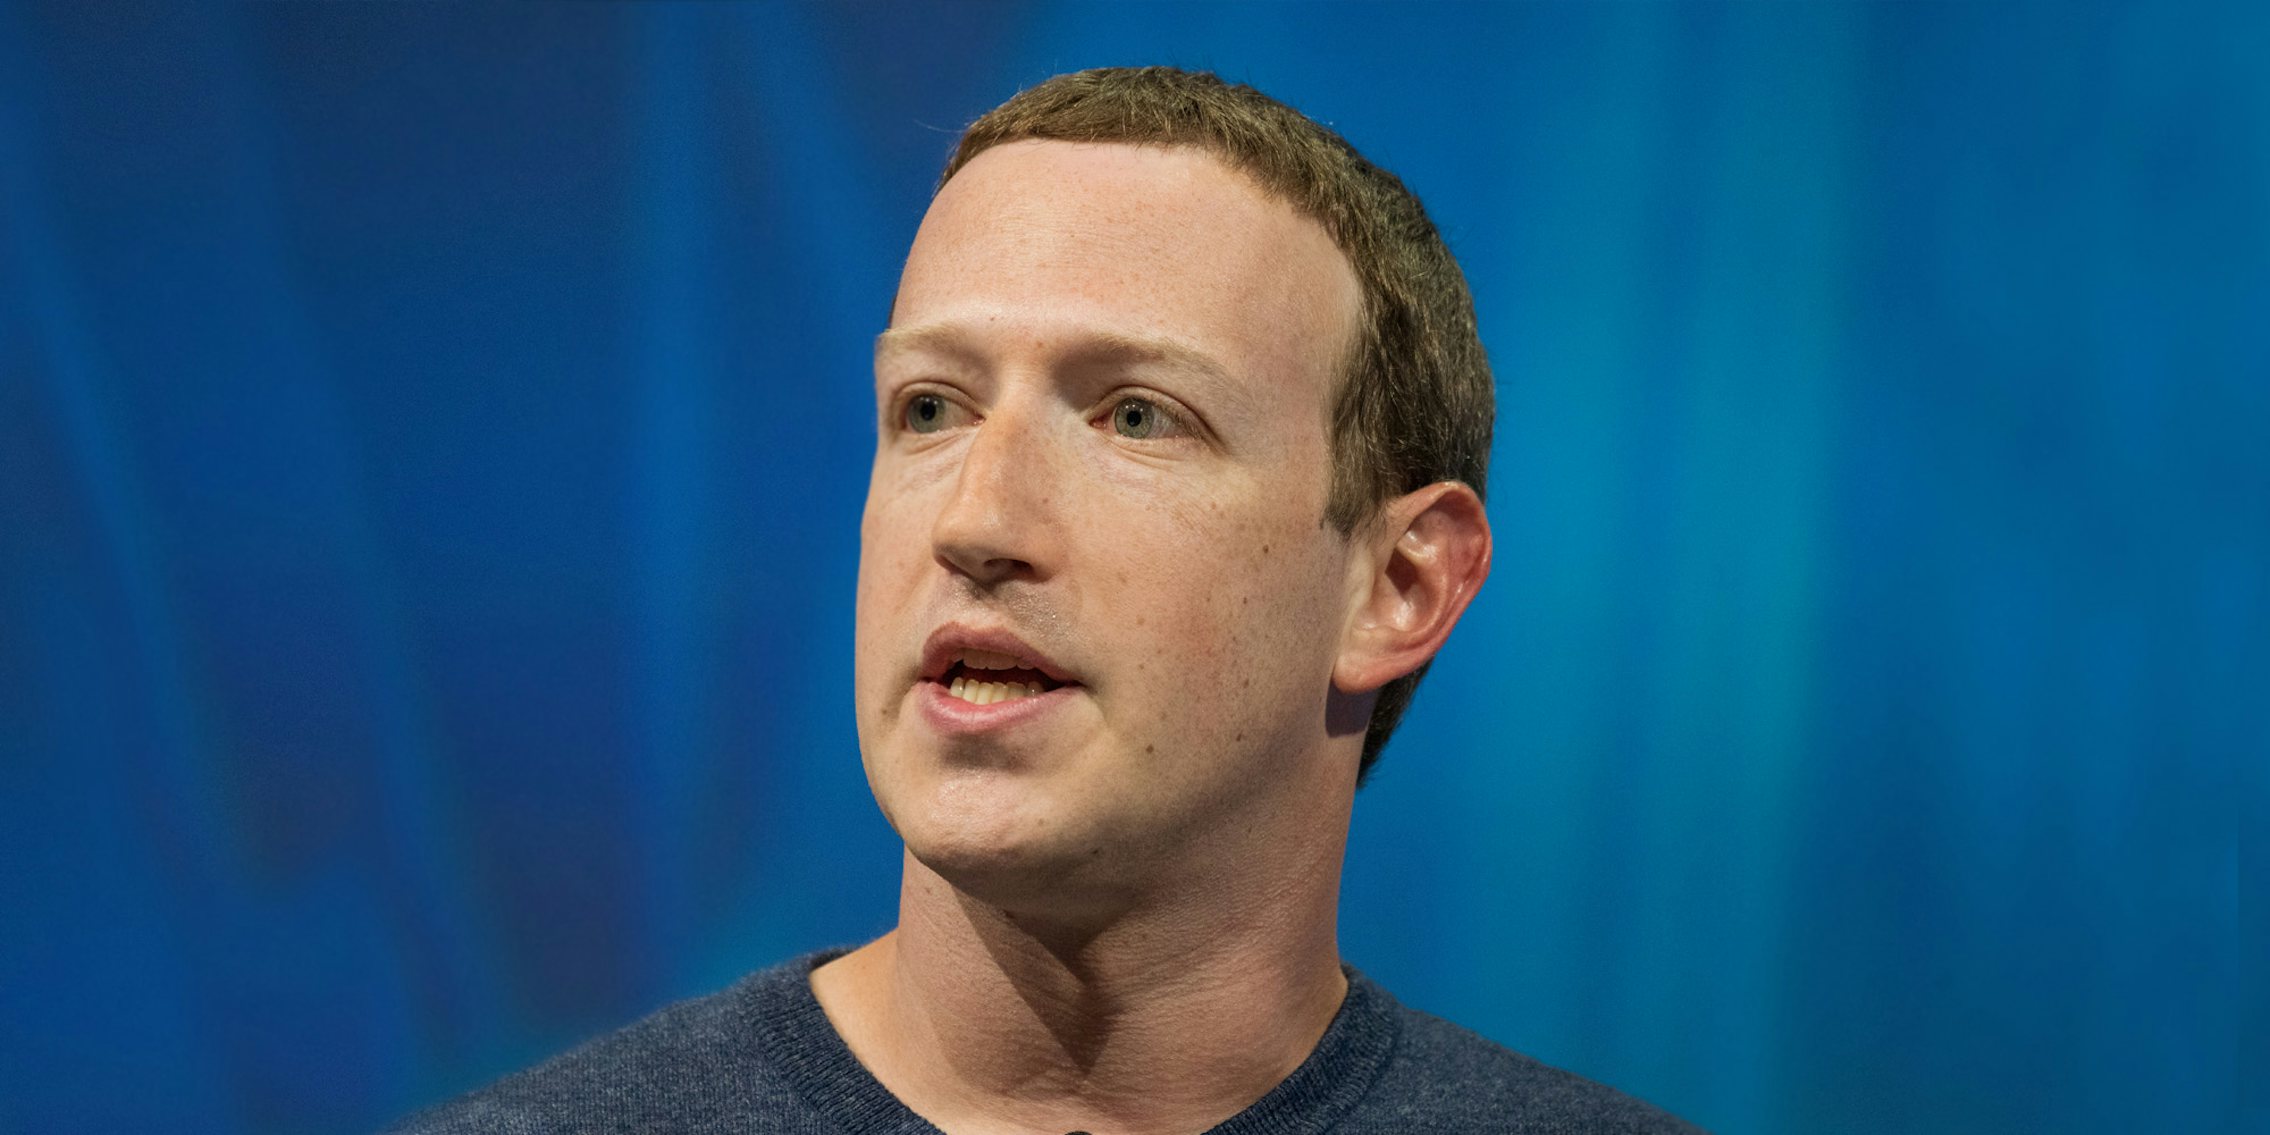 Mark Zuckerberg on blue background